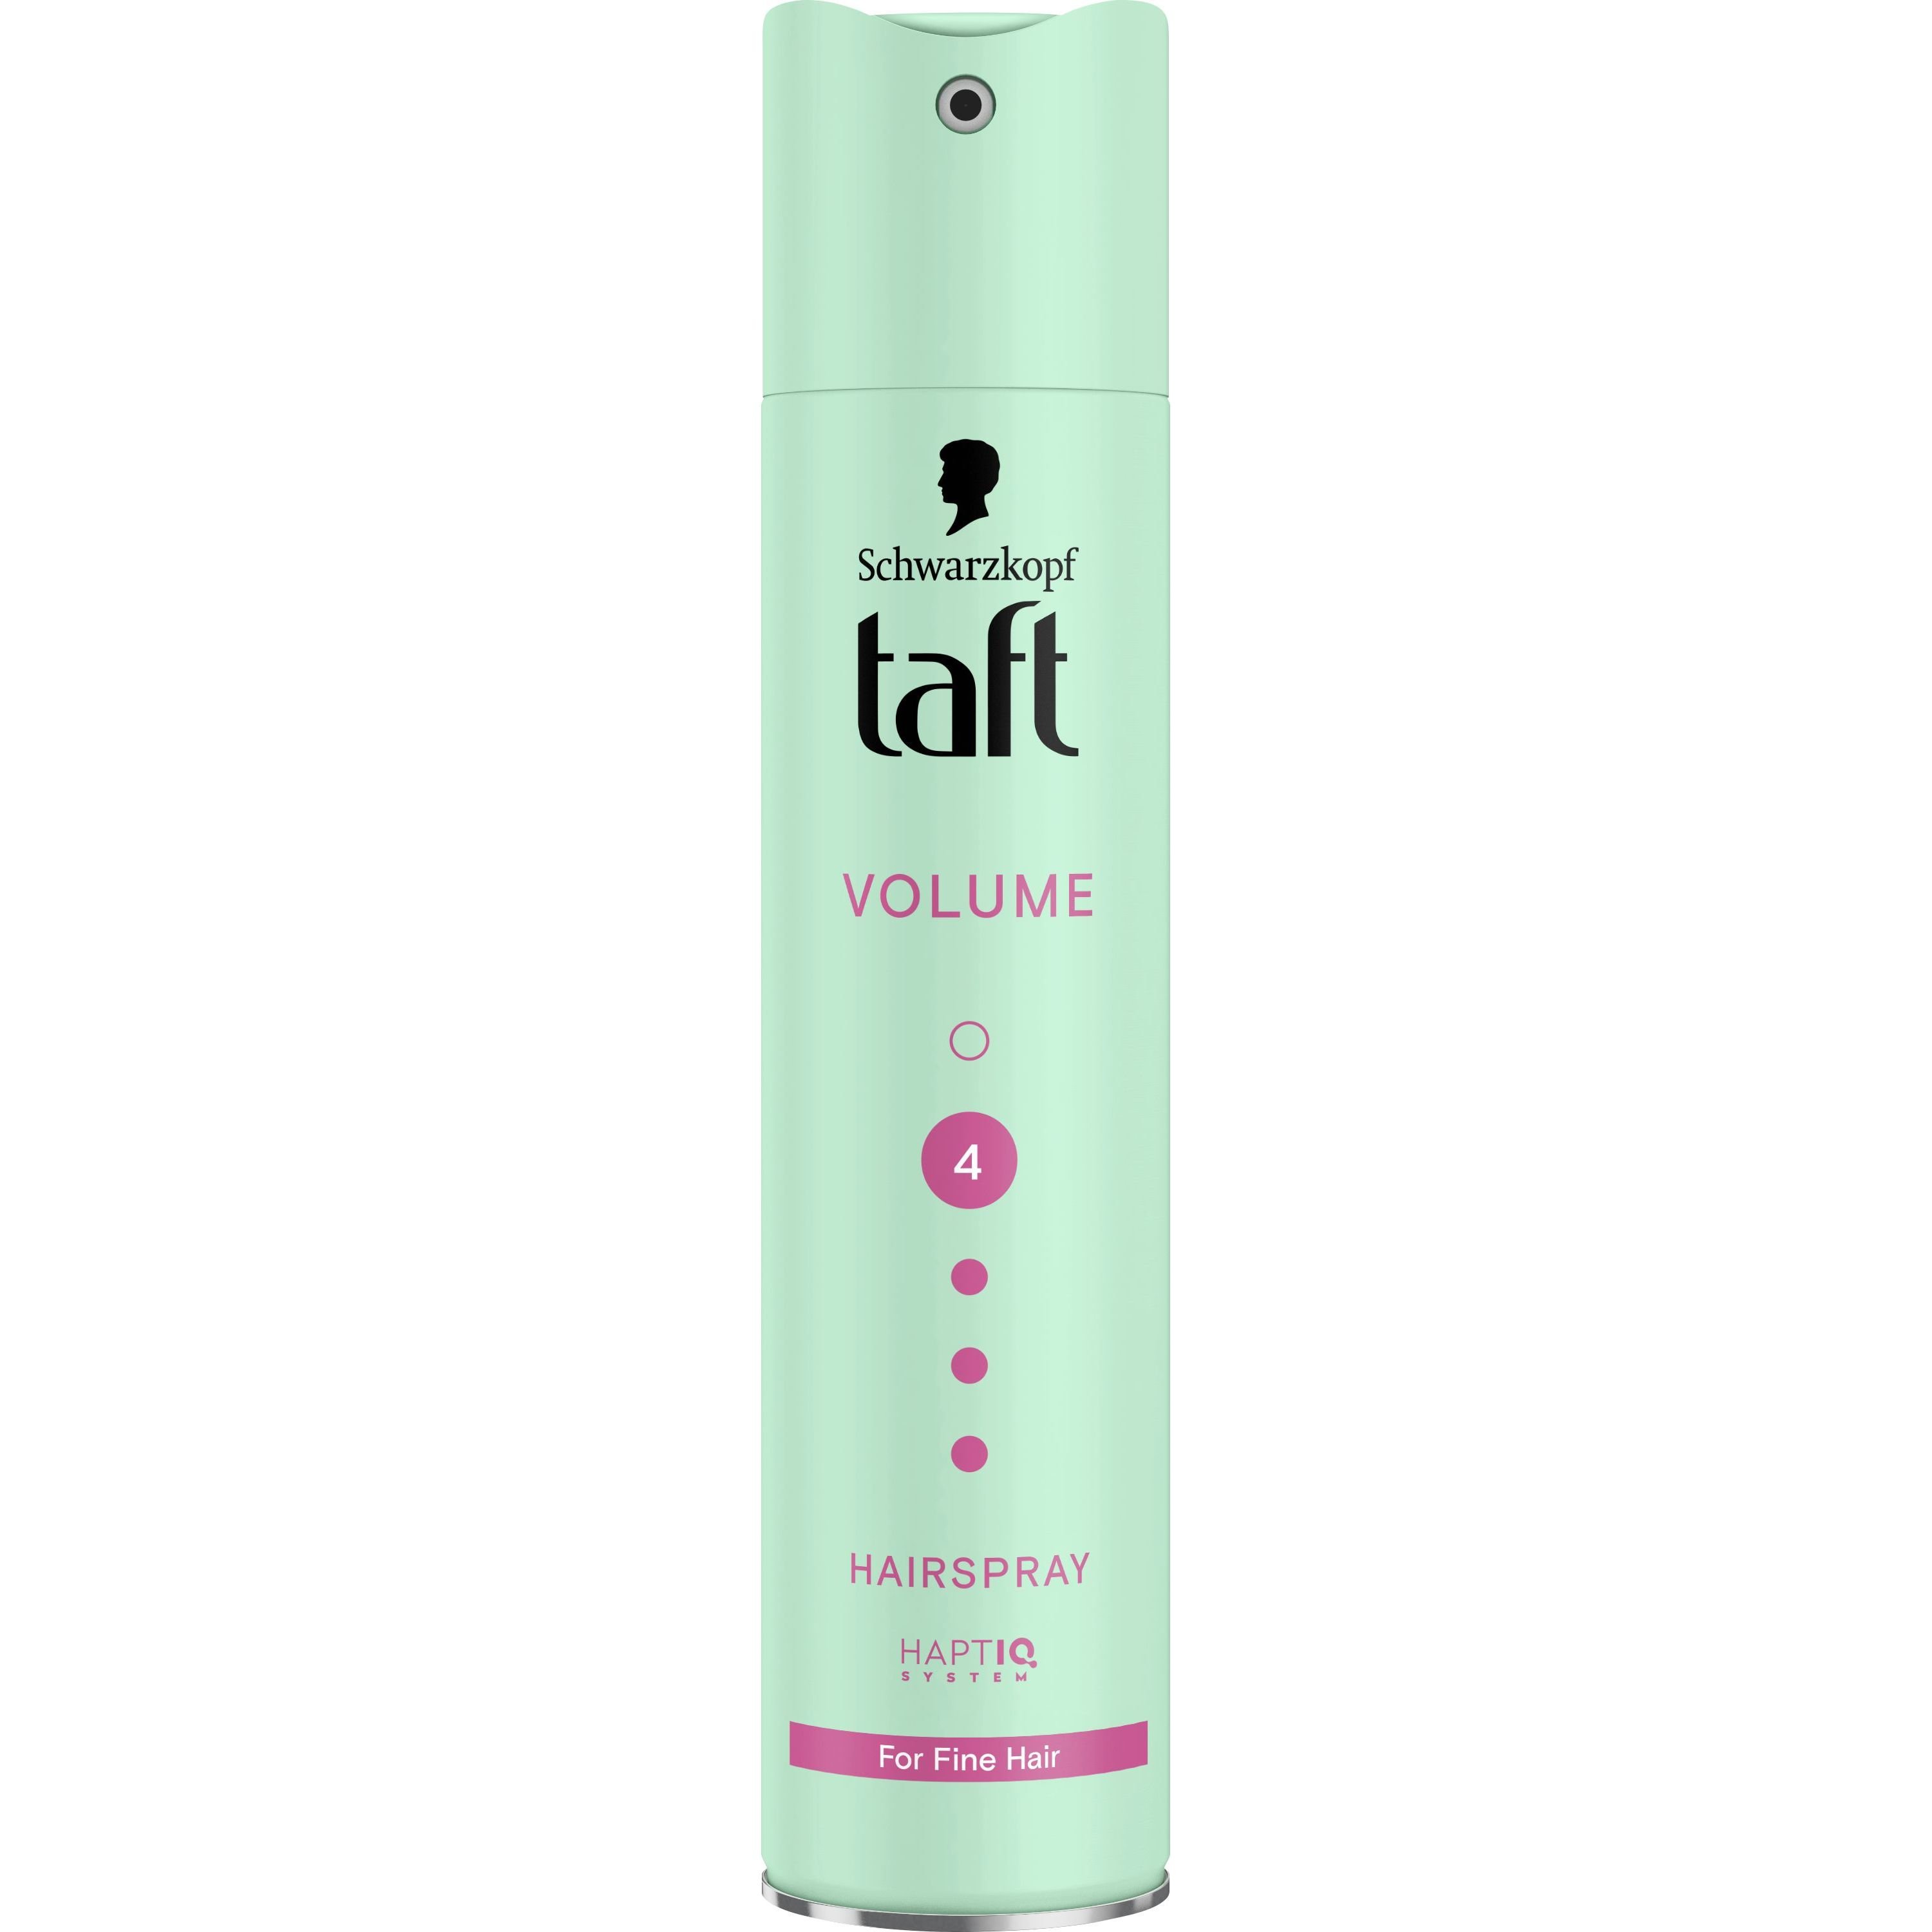 Лак Taft Volume 4 для тонких волос 250 мл - фото 1